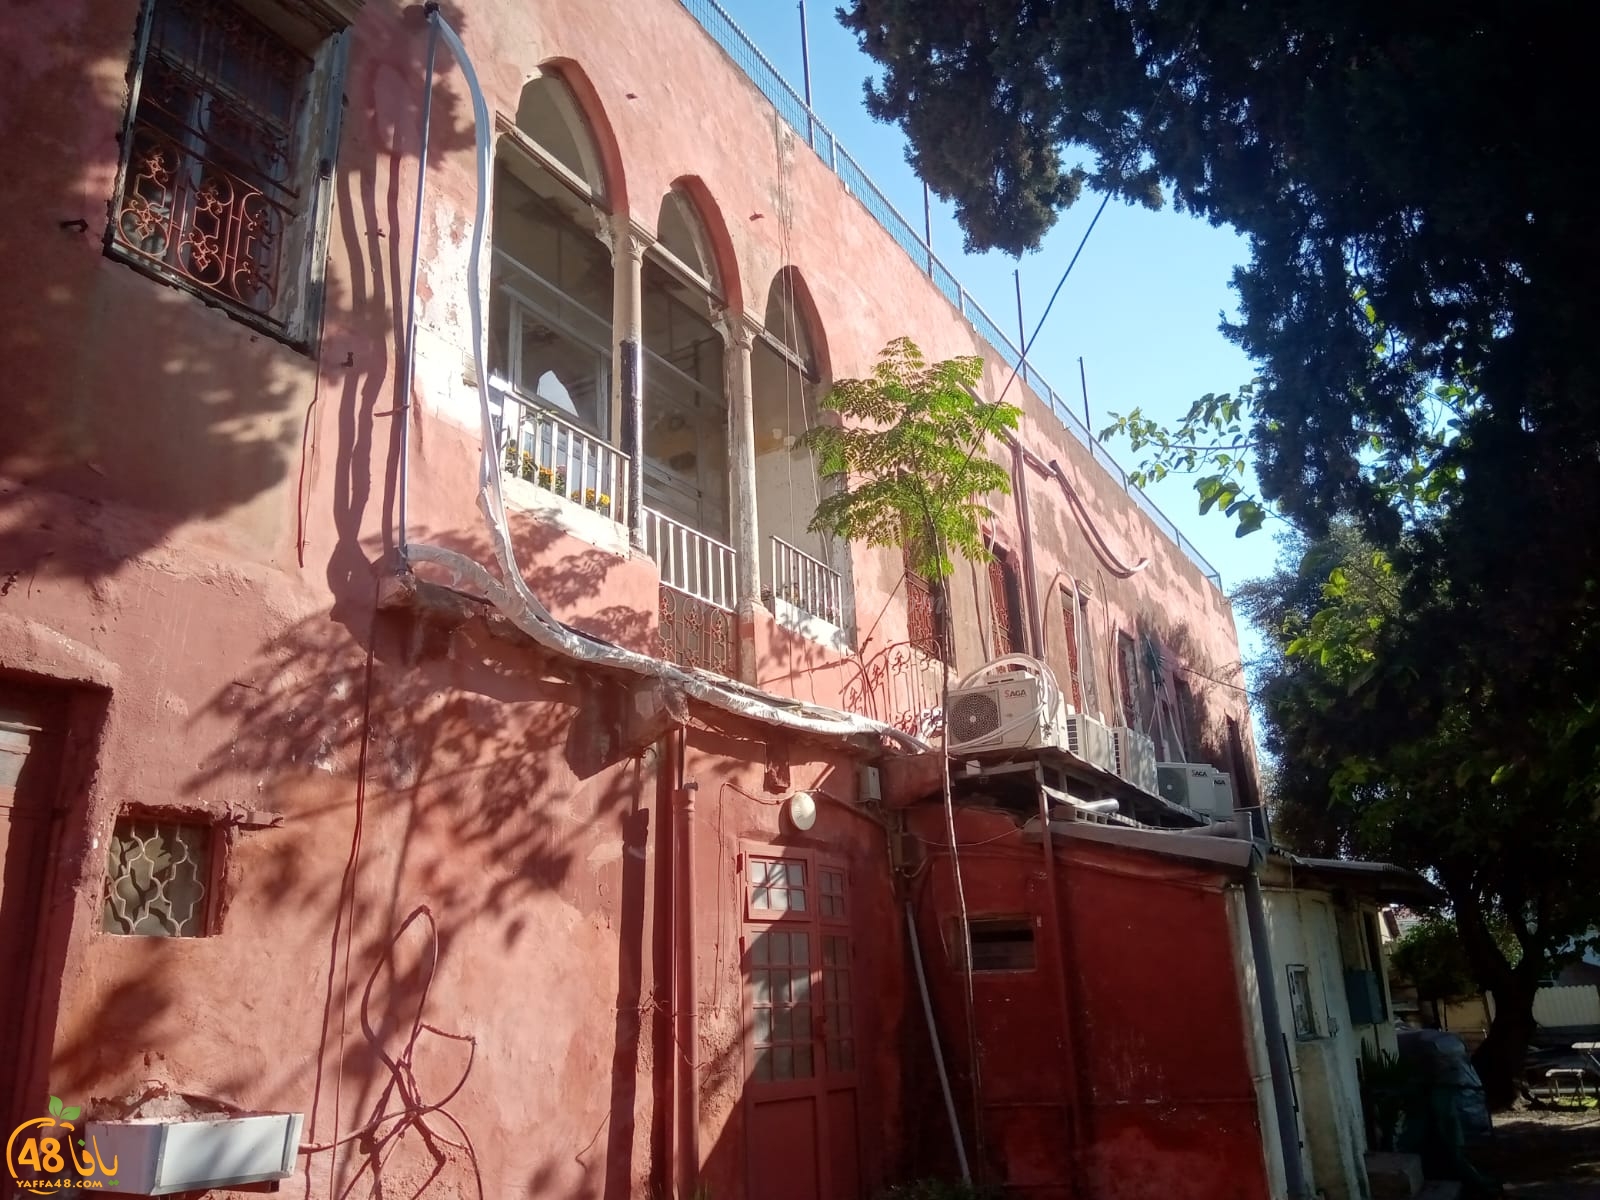  شاهد: هنا توقّف الزمان - روعة وضخامة البيت الأحمر بيت الشيخ مراد شرق يافا 